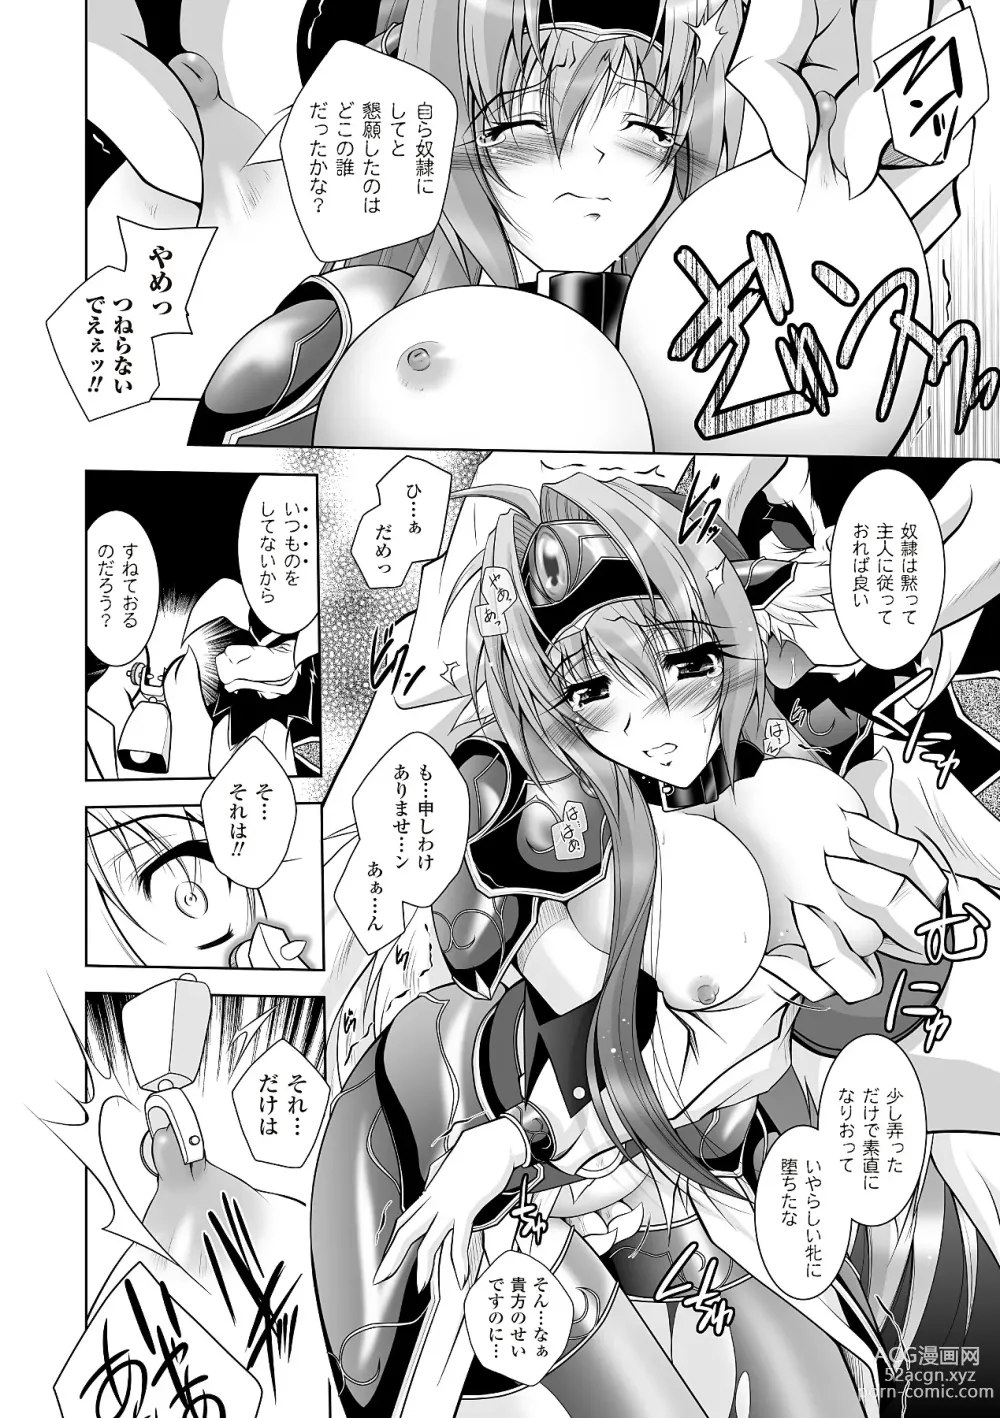 Page 32 of manga Datenshi-tachi no Rhapsody - Fallen Angels Rhapsody